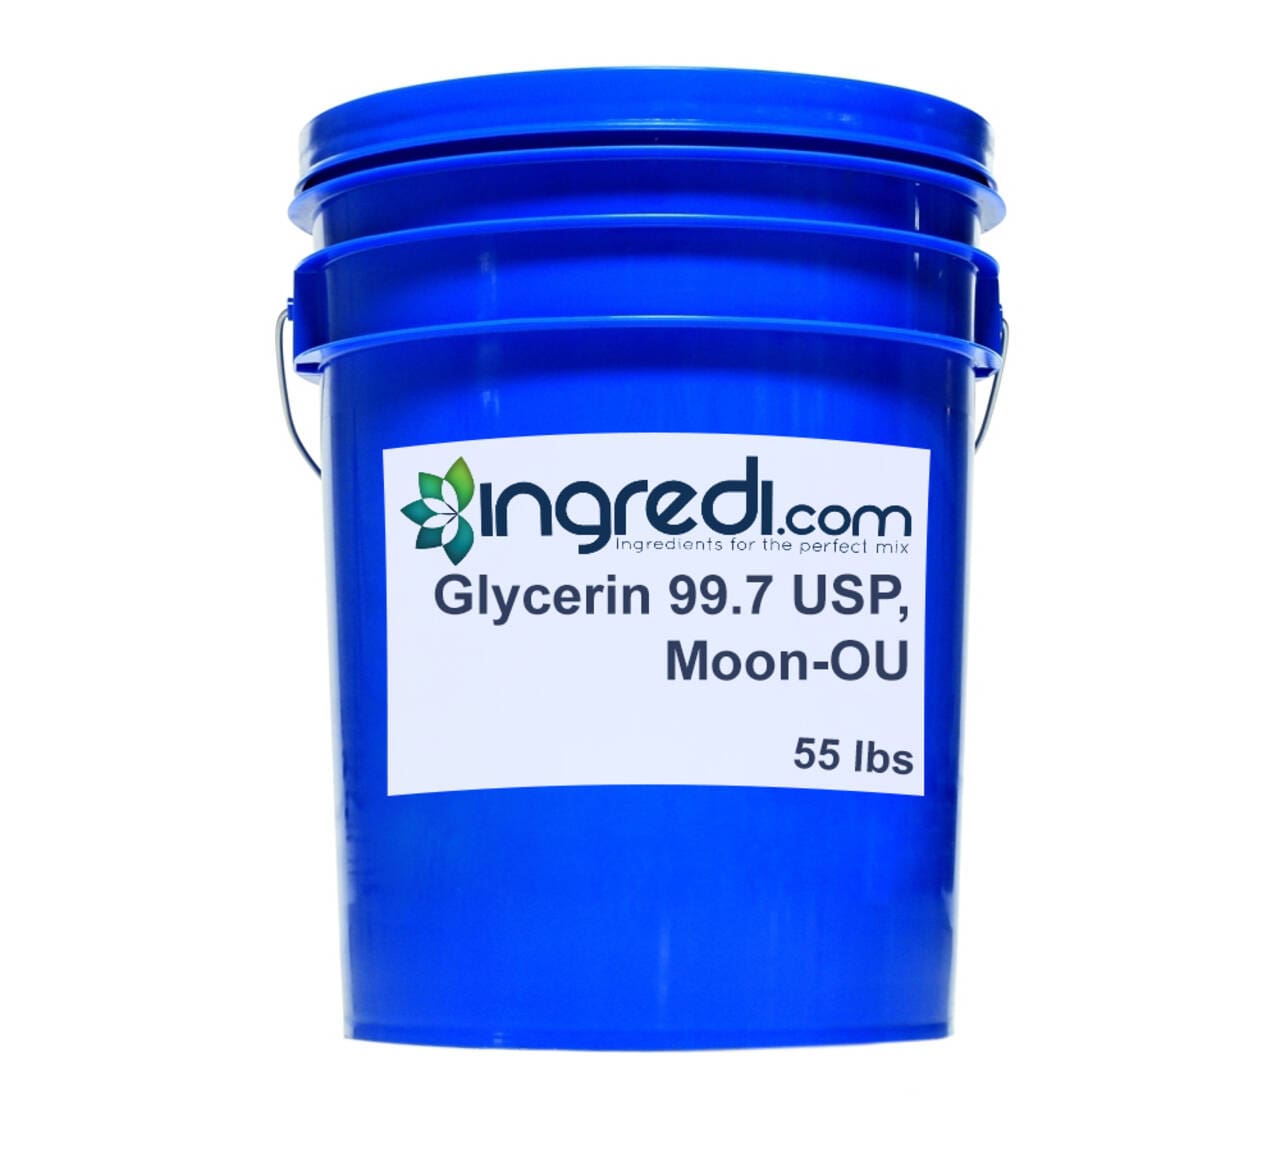 Moon OU Glycerin 99.7% USP/FCC, Kosher Certified